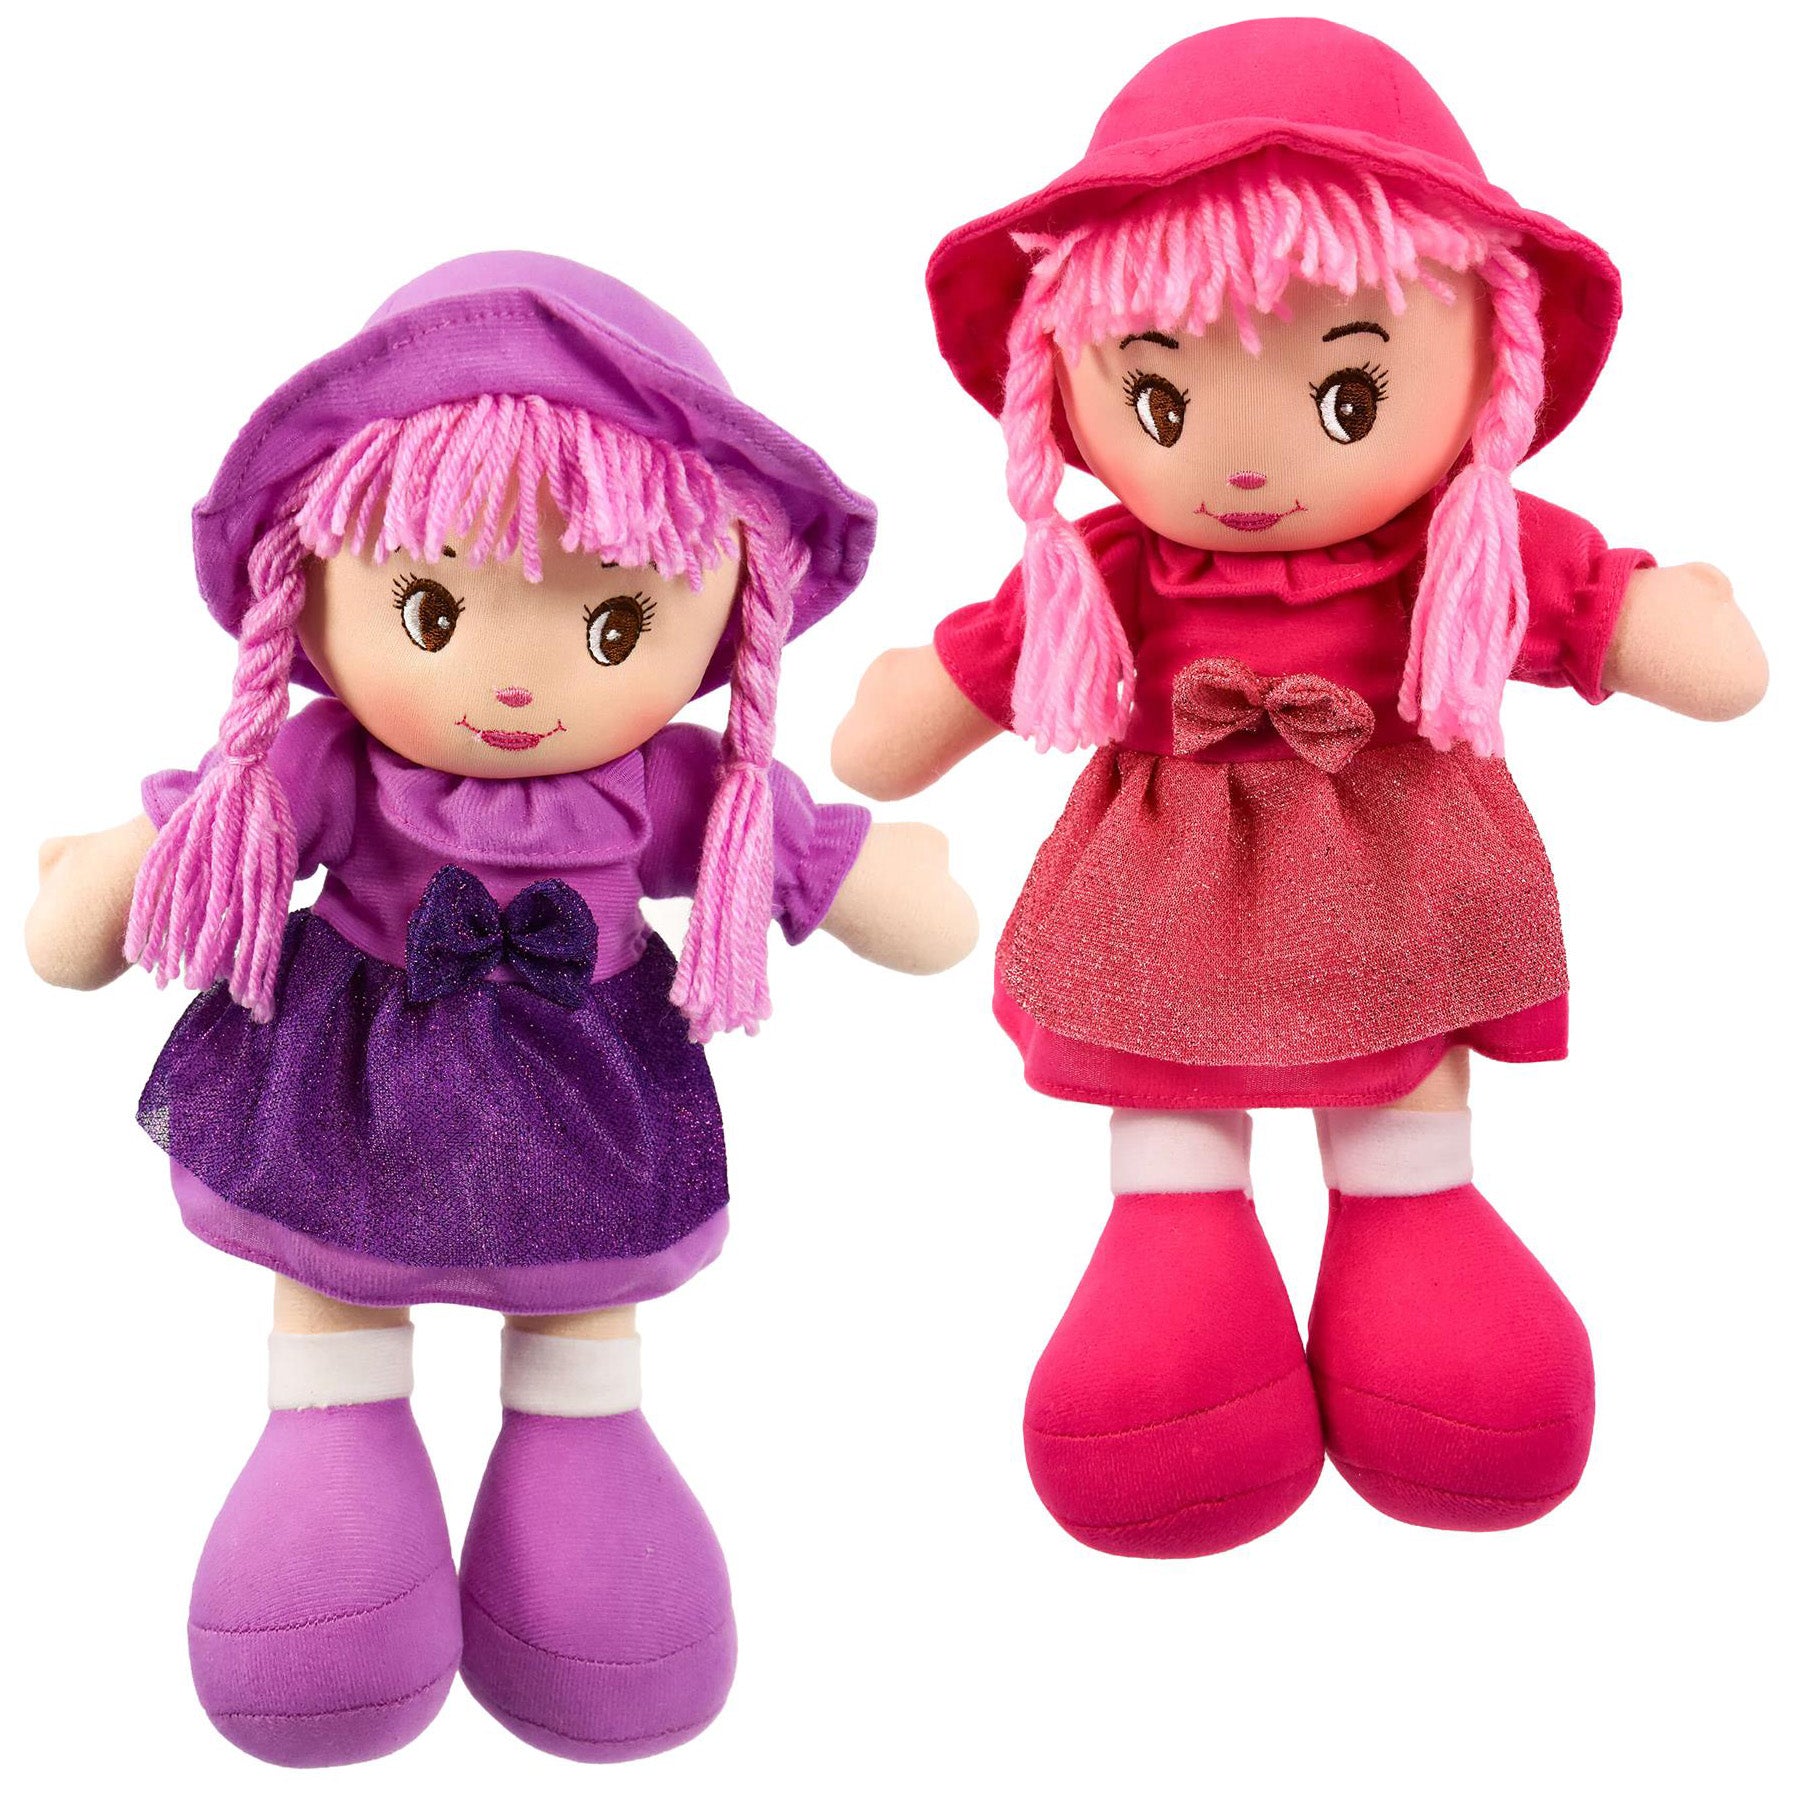 My First Rag Doll 35 cm Soft Cuddly Dolly by BiBi DollThe Magic